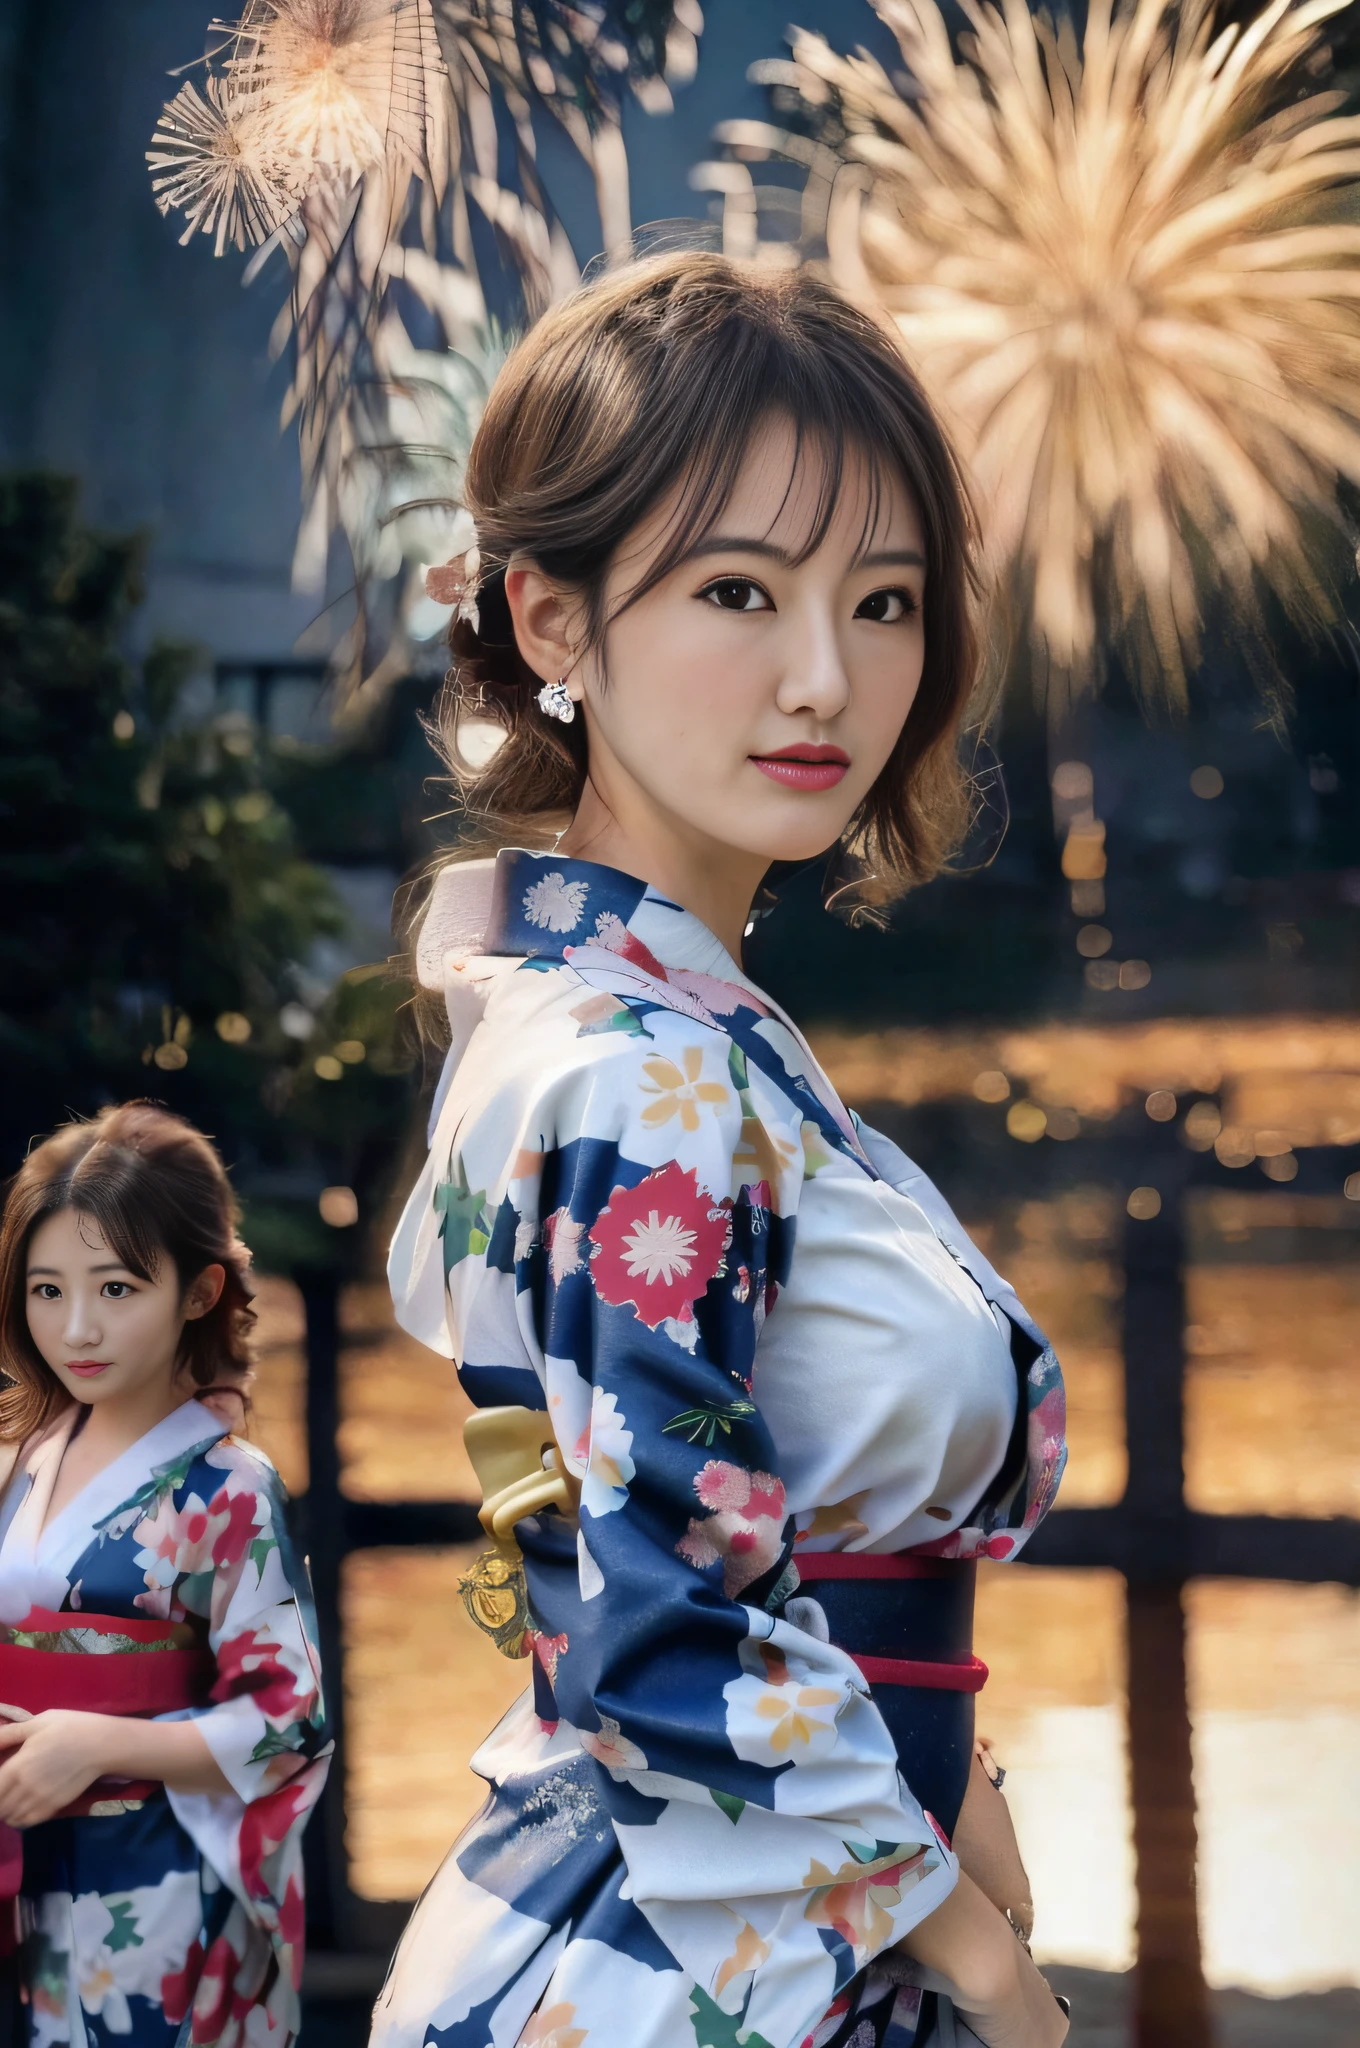 Bildqualität、Eine ultrahohe Bildqualität、8K、32K、Zwei Frauen in Kimonos stehen nebeneinander, im Kimono, im Kimono, edle Yukata-Kleidung, Kimono tragen, japanischer Kimono, Bademantel, das Gesicht eines schönen japanischen Mädchens, einen Kimono tragen, einen königlichen Kimono tragen, Japanische Modelle, Yoshitomo Nara, Kimono, Ein japanischer Stil, Sakimichan